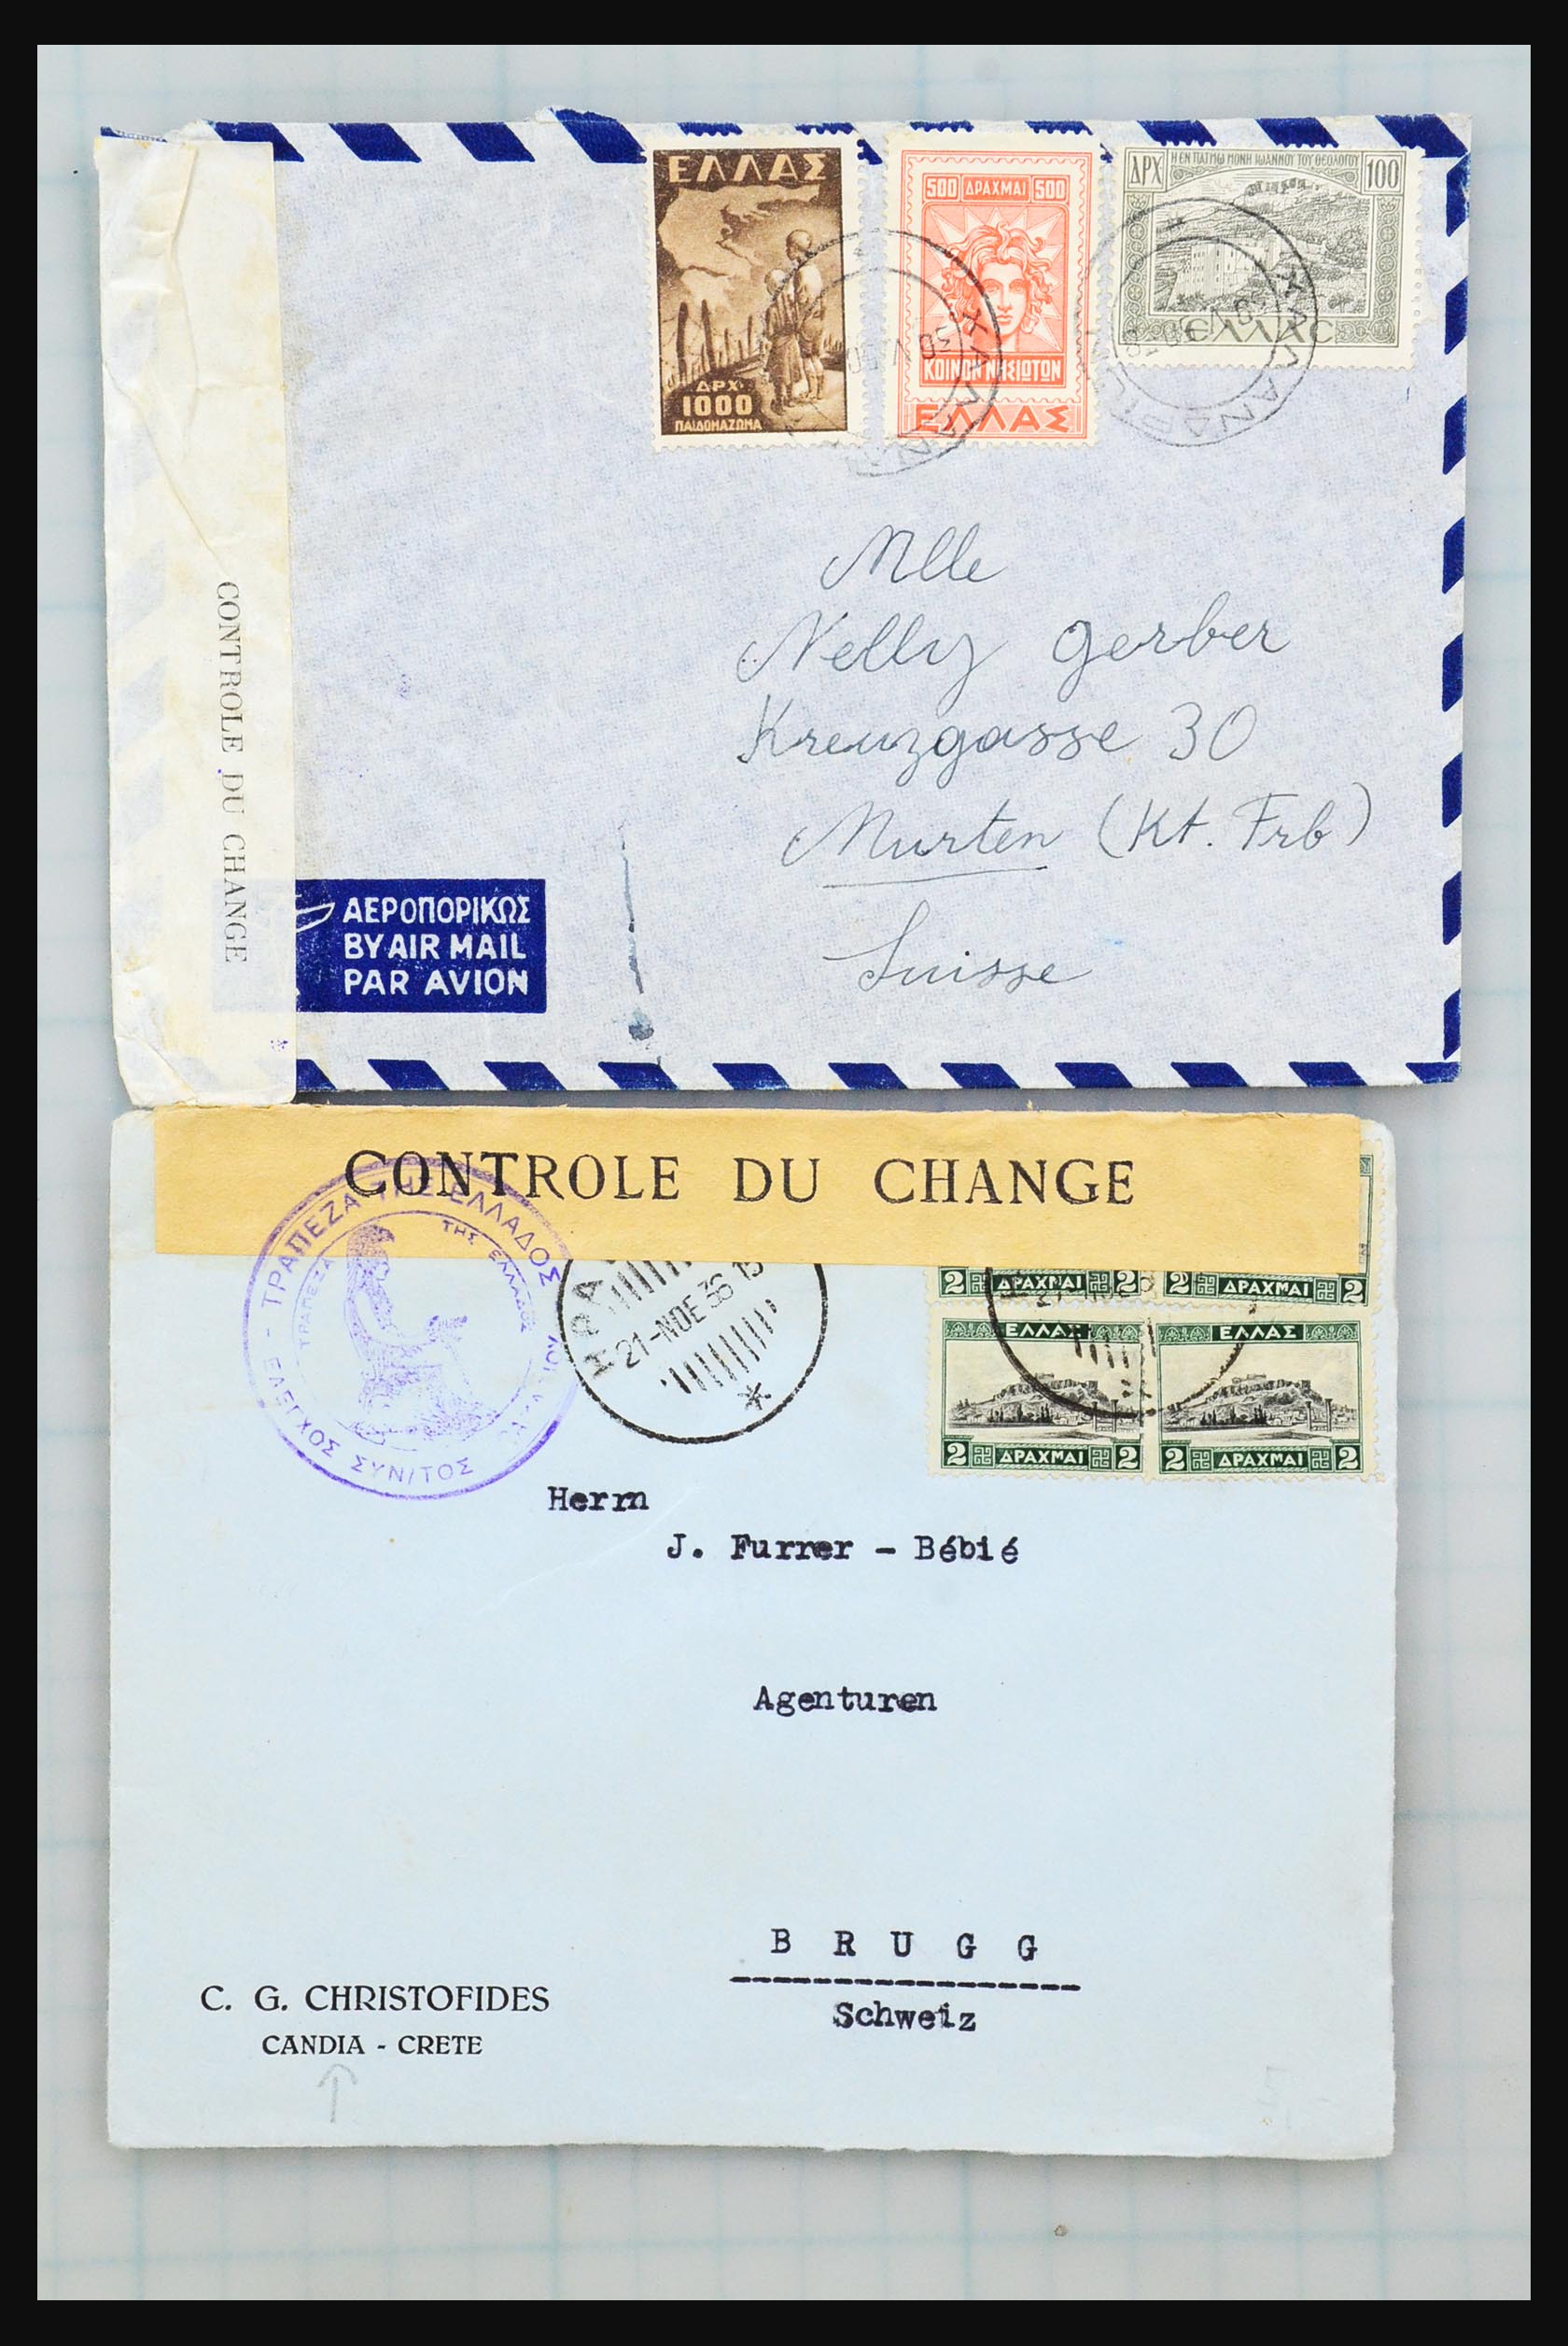 31358 034 - 31358 Portugal/Luxemburg/Griekenland brieven 1880-1960.